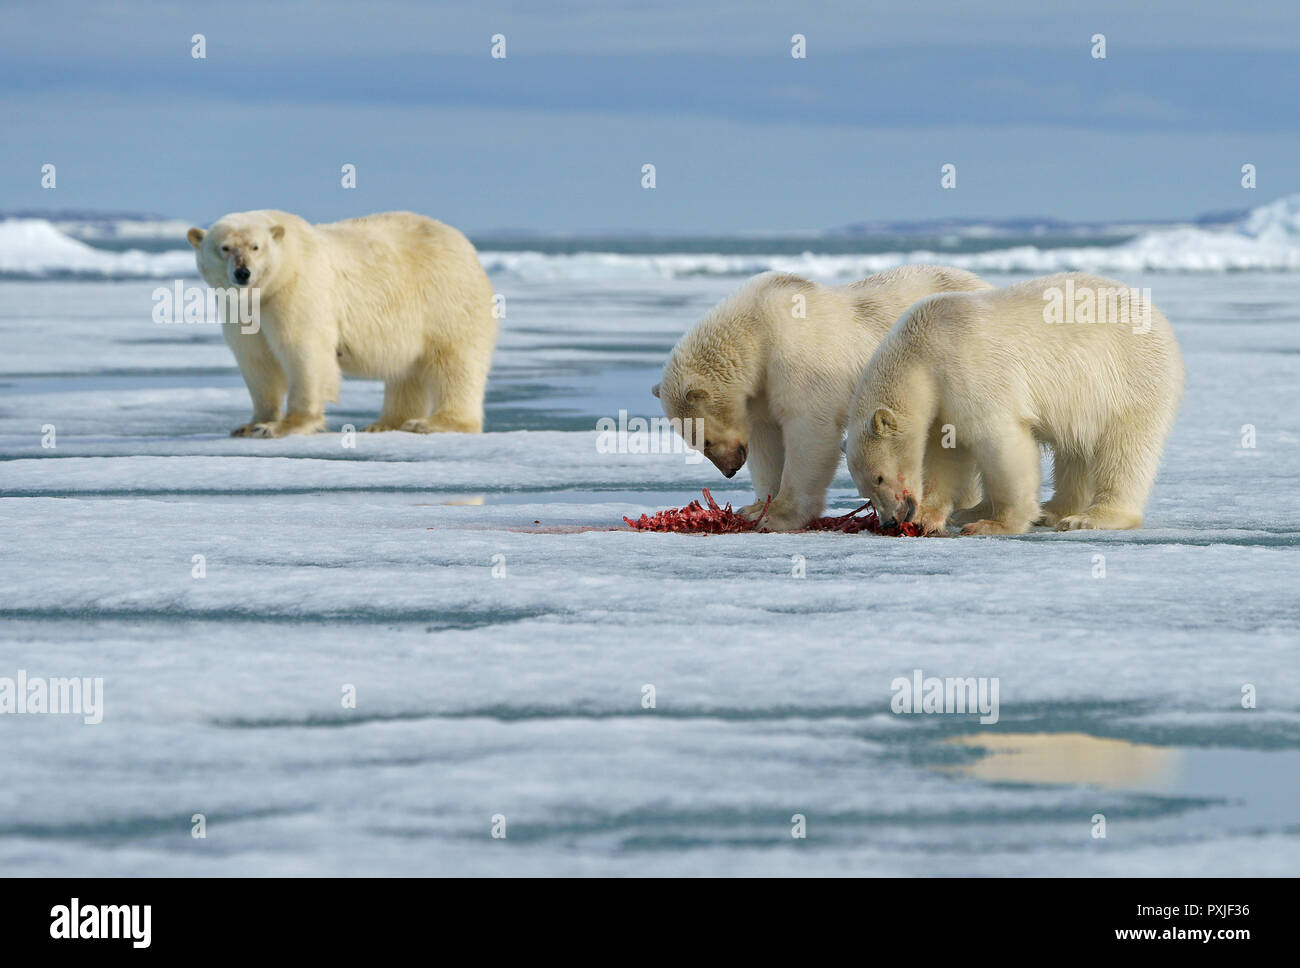 Eisbären (Ursus maritimus), junge Tiere auf der Weide auf dem Kadaver eines erfassten Dichtung im Schnee, Mutter Tier in der Rückseite Stockfoto